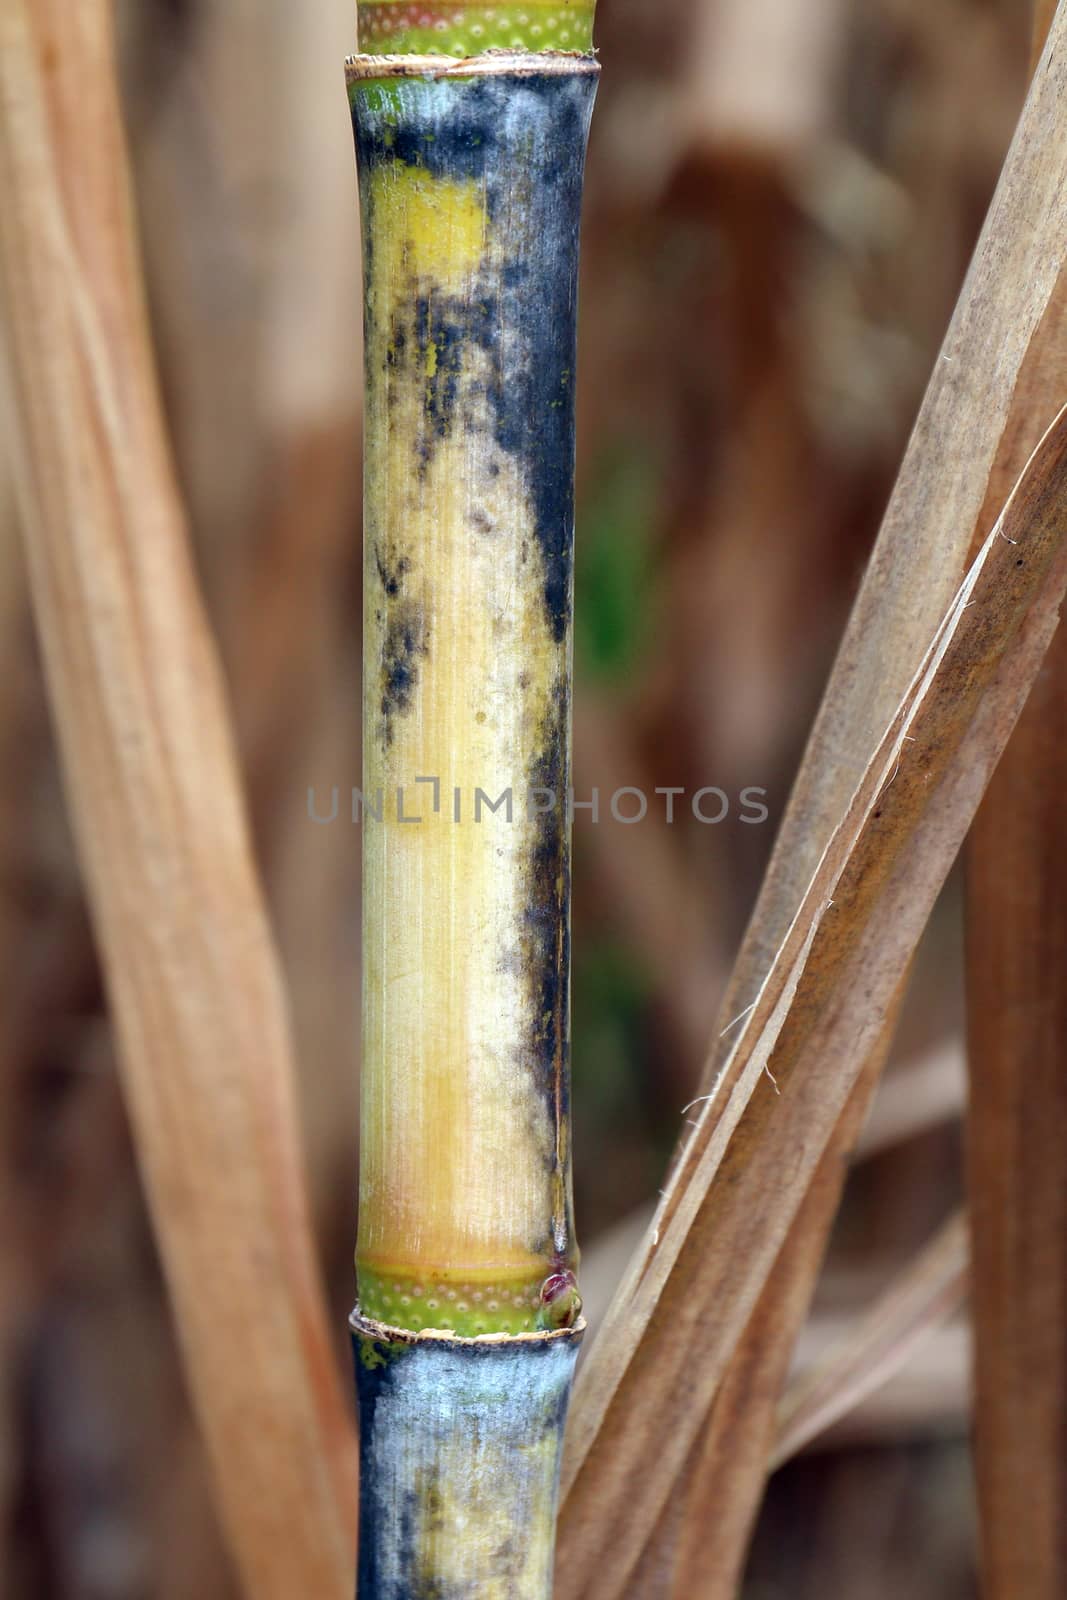 sugarcane fresh plantation, sugarcane close-up, sugarcane agriculture